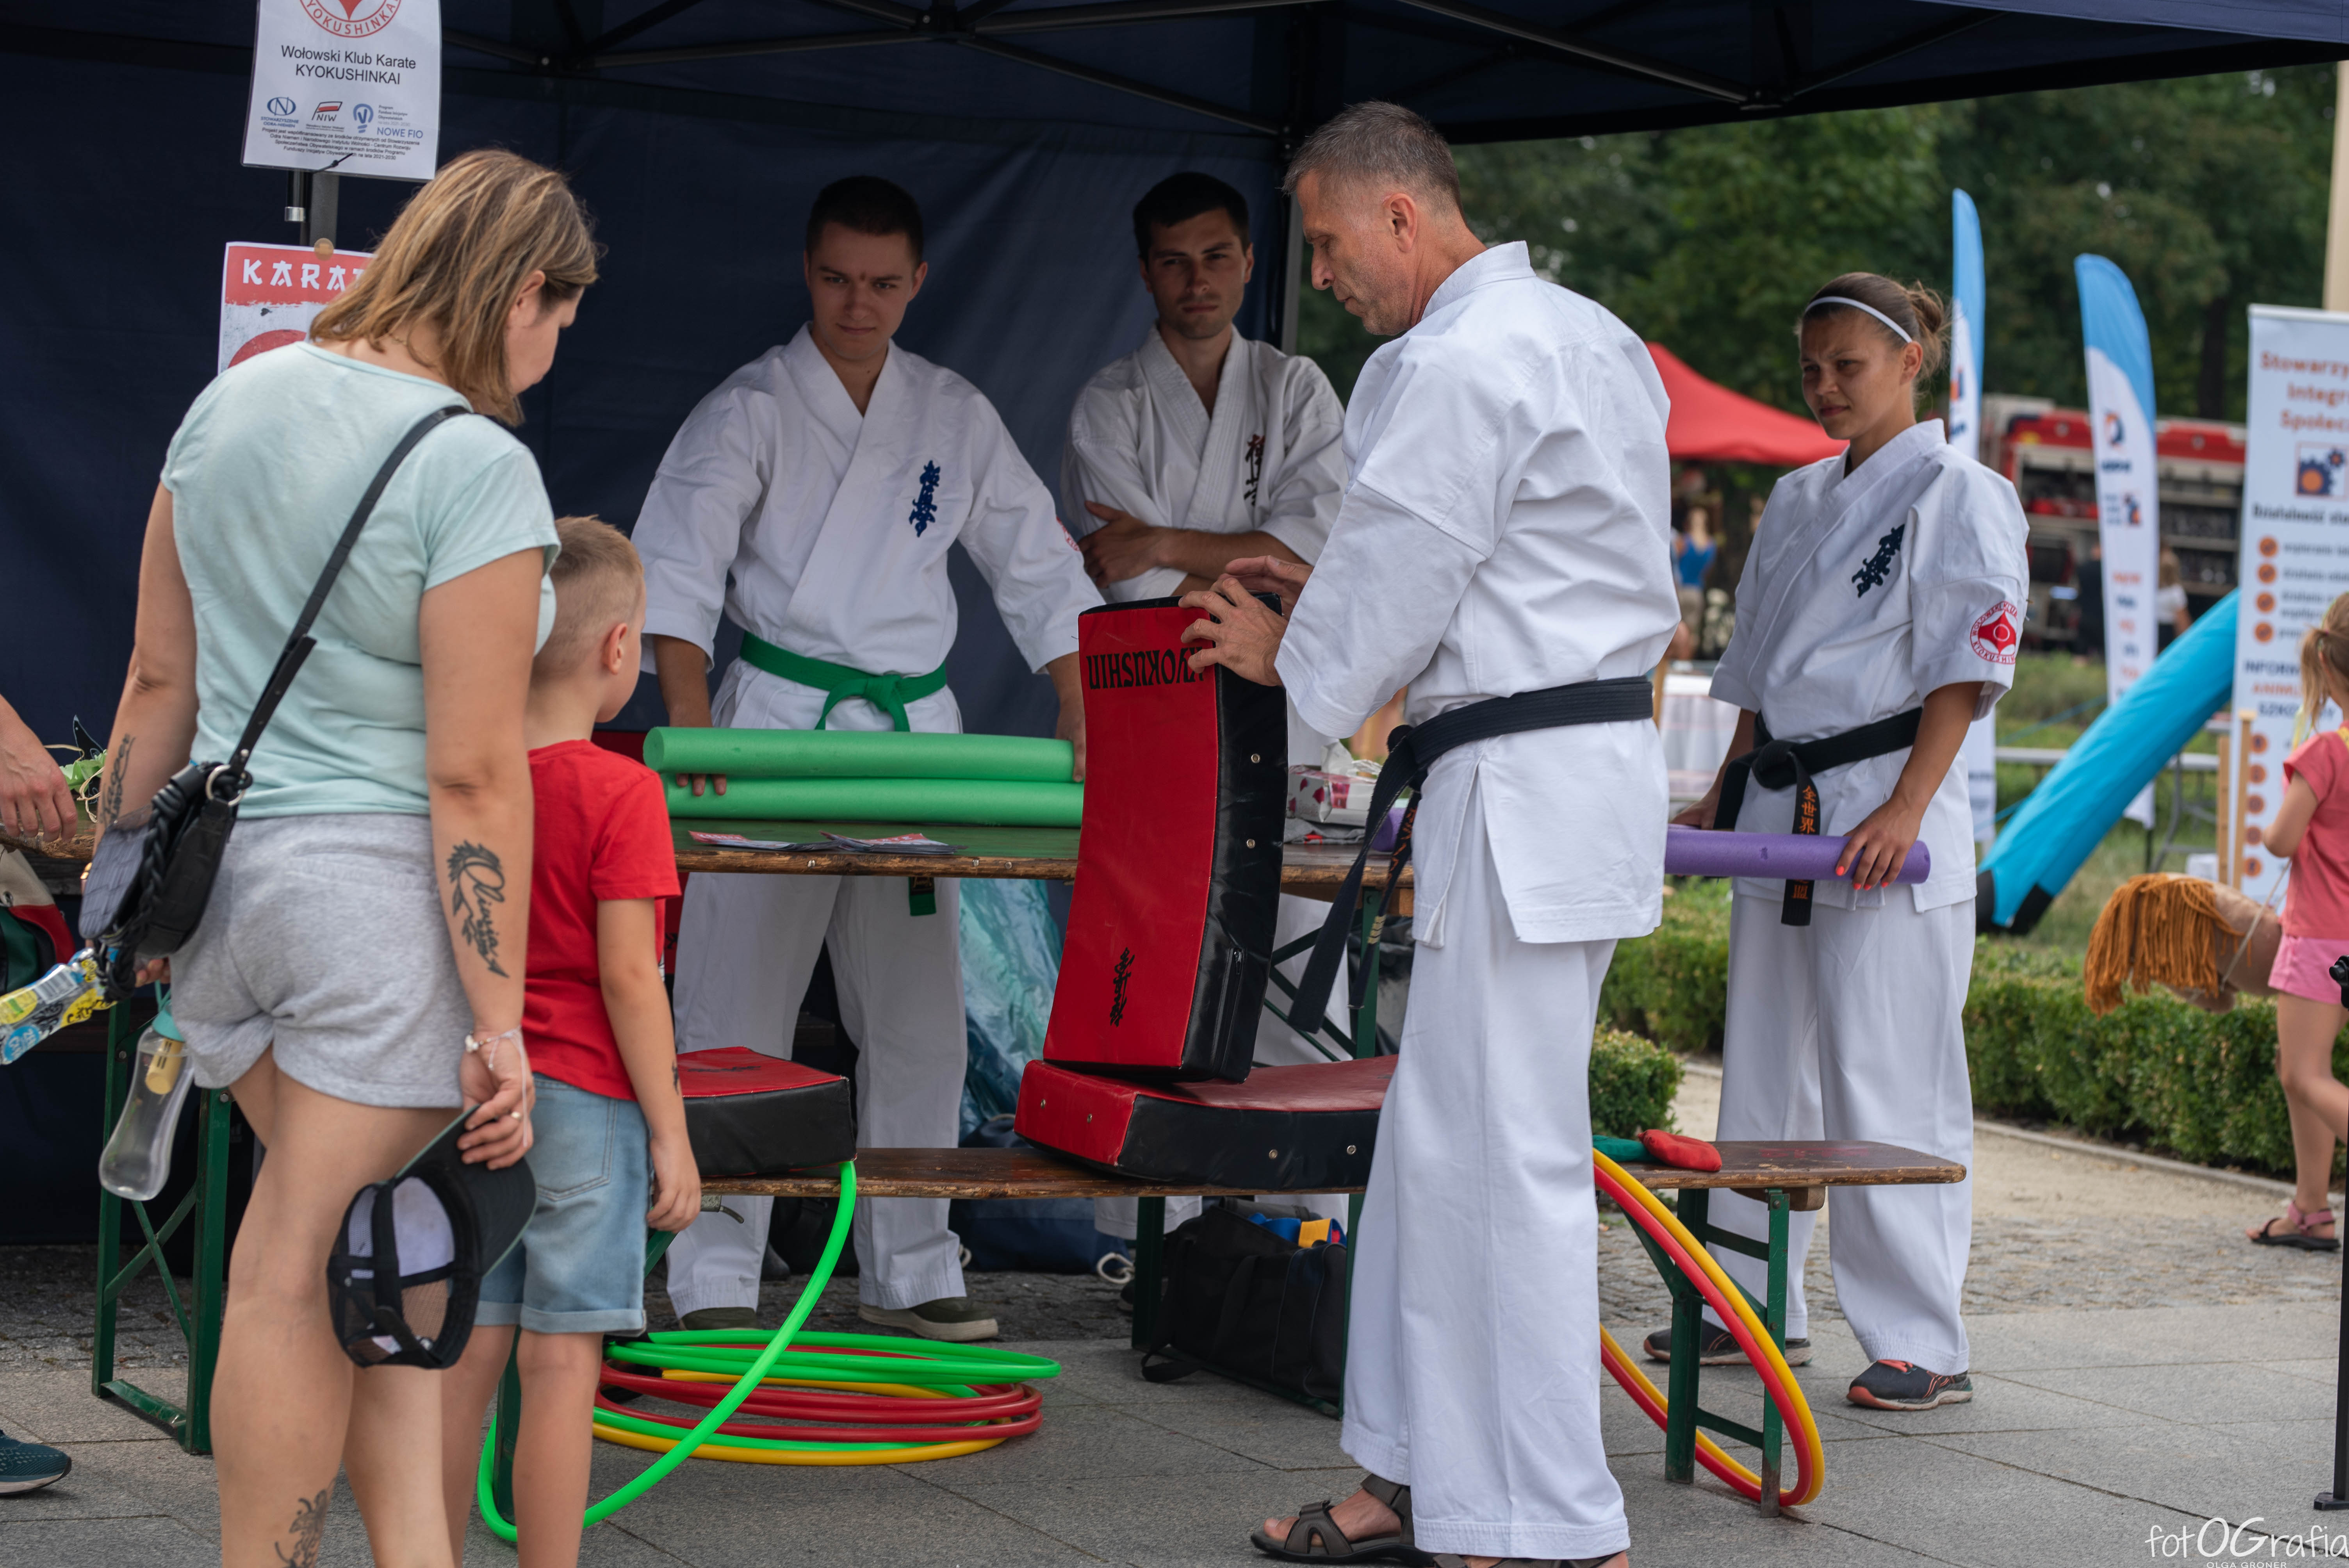 Zdjęcie przedstawia grupę osób biorących udział w pokazie karate.